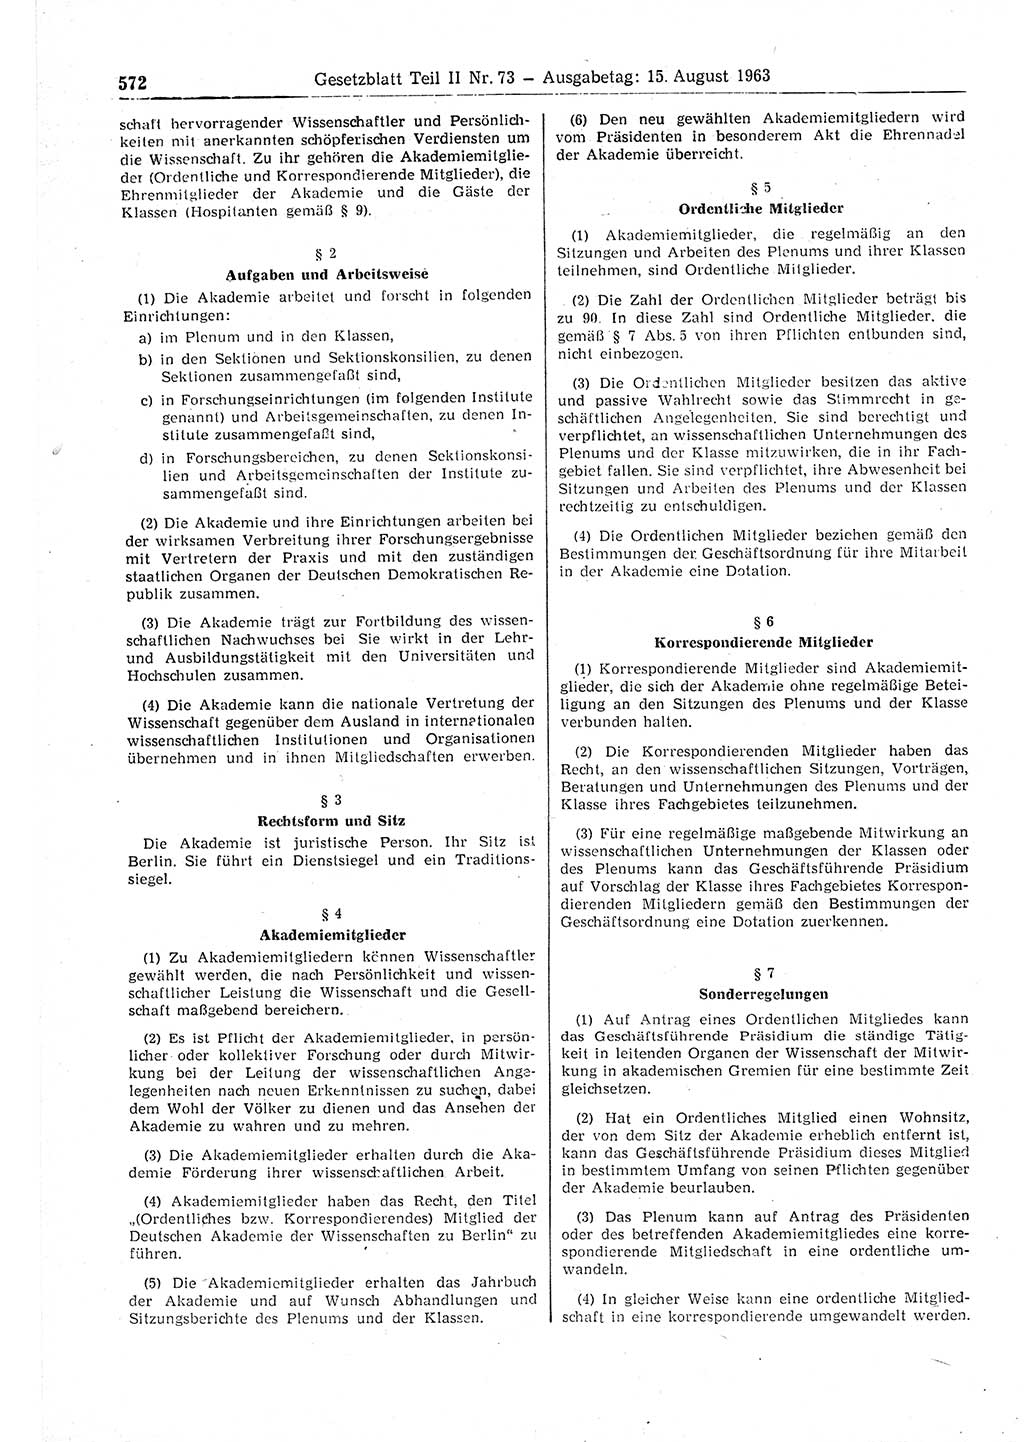 Gesetzblatt (GBl.) der Deutschen Demokratischen Republik (DDR) Teil ⅠⅠ 1963, Seite 572 (GBl. DDR ⅠⅠ 1963, S. 572)